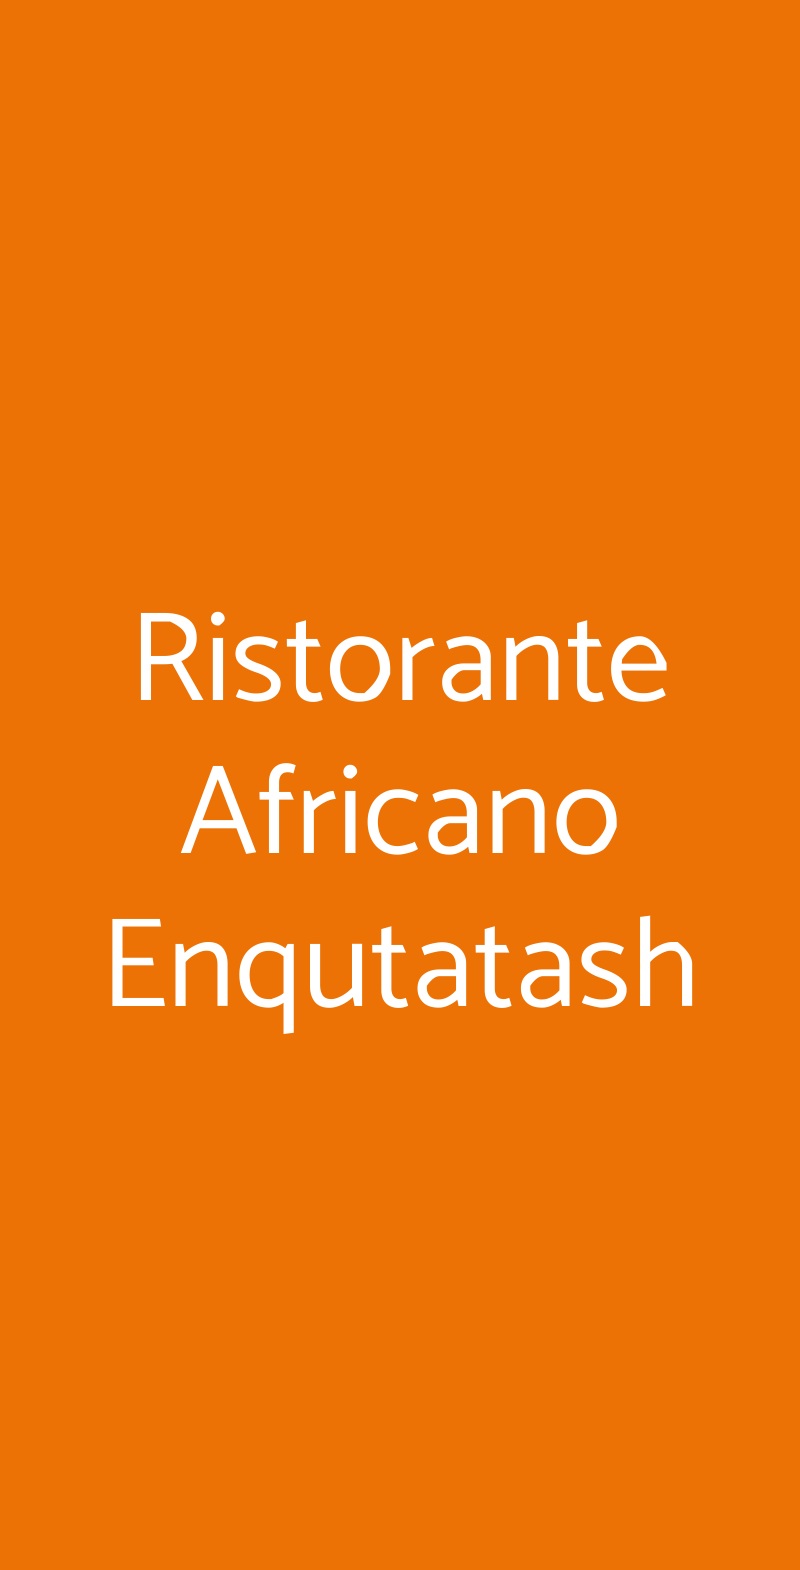 Ristorante Africano Enqutatash Roma menù 1 pagina